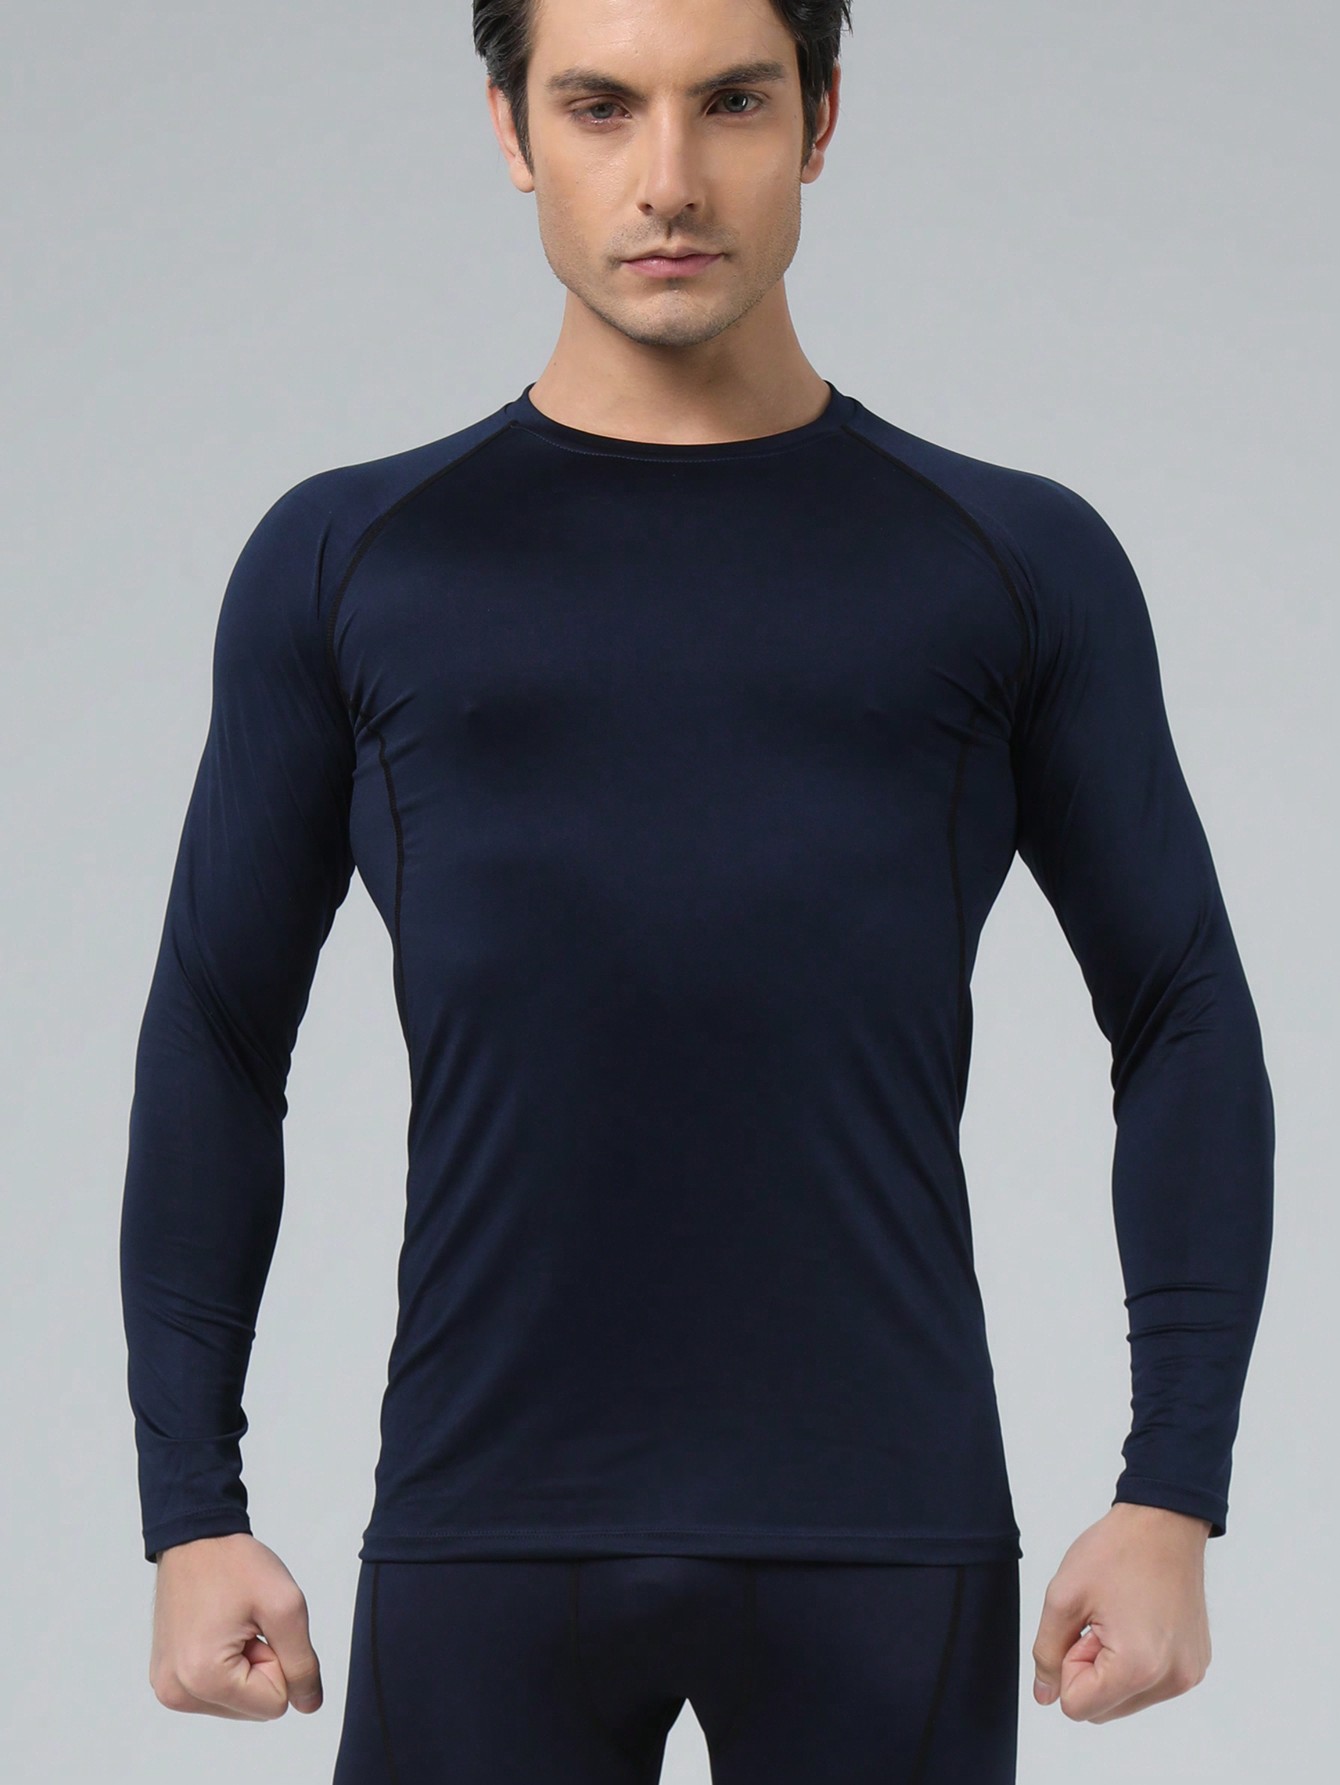 Мужская эластичная компрессионная рубашка для фитнеса с длинными рукавами, темно-синий многоцветная быстросохнущая спортивная футболка с коротким рукавом для фитнеса тренировочная футболка для бега дышащая спортивная одежд